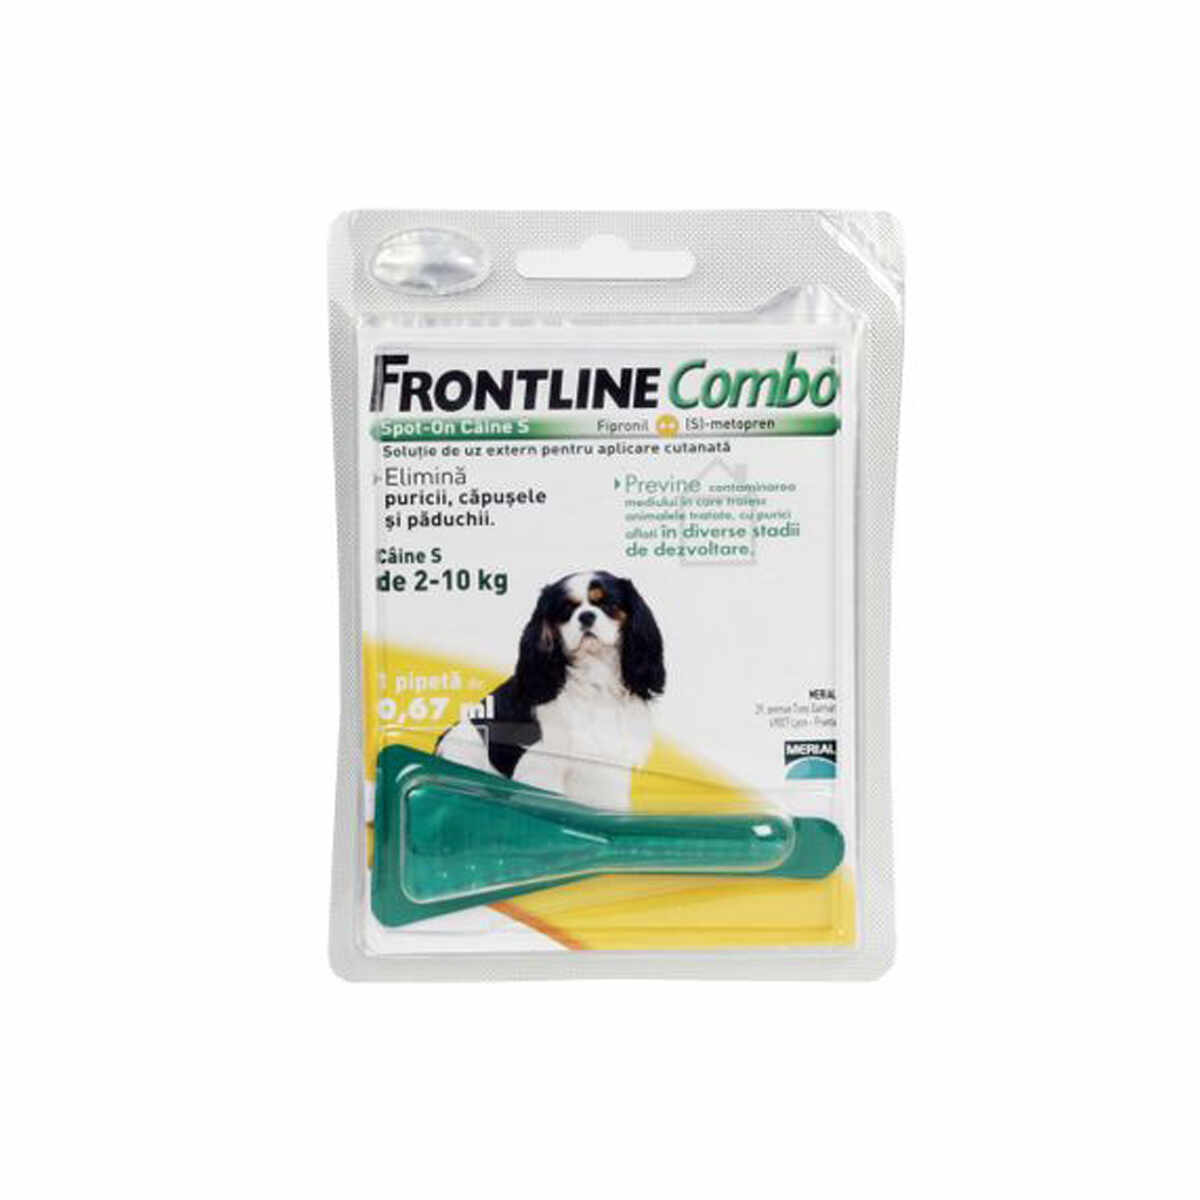 Frontline Combo pentru caini de talie mica 2-10kg, 3 pipete antiparazitare